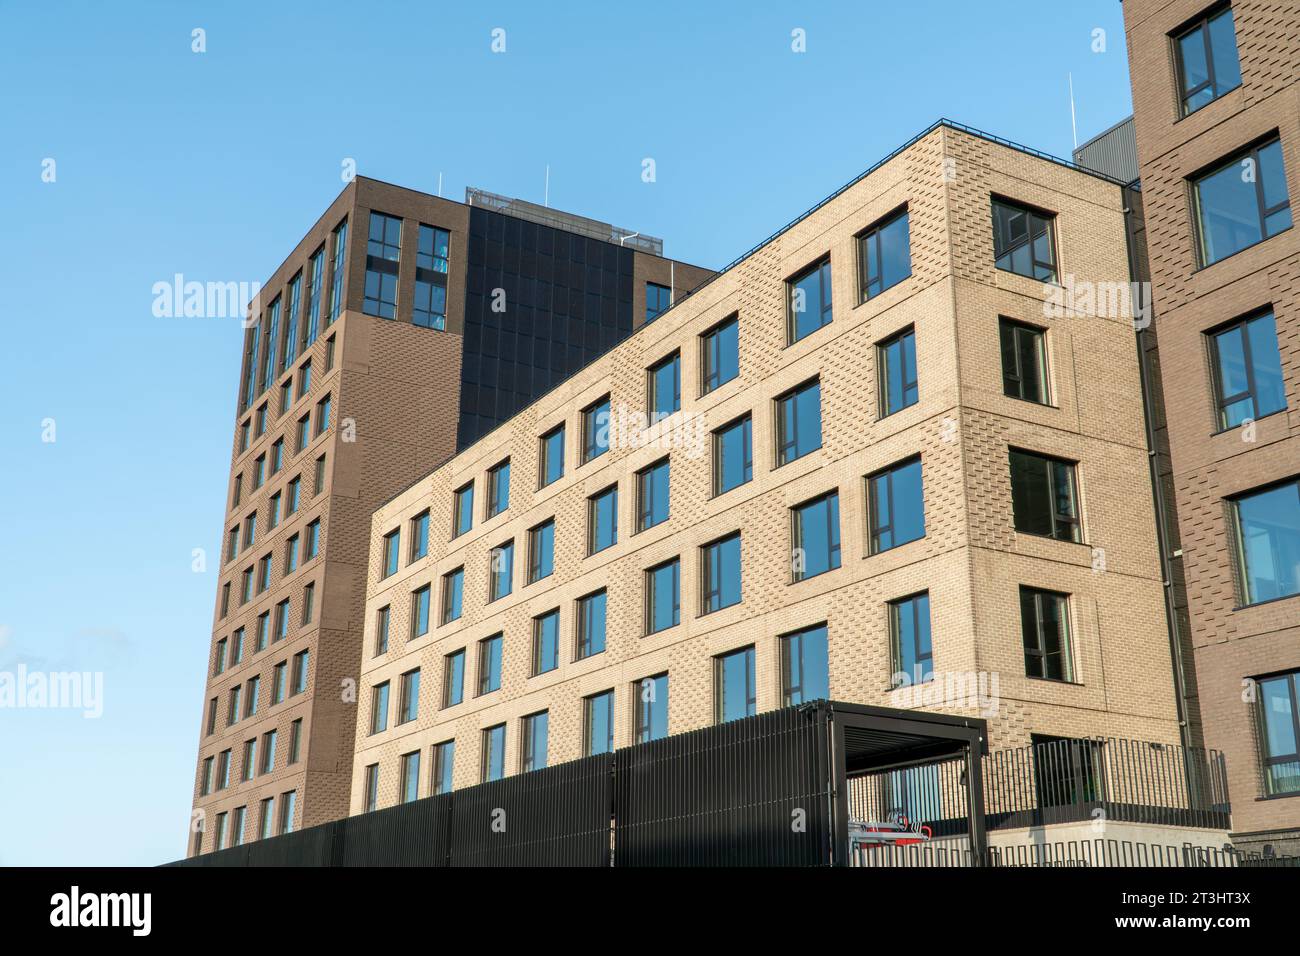 Un esempio di architettura minimalista di forma cubica con vista della decorazione decorativa della facciata dell'edificio. Vista degli edifici da un piano basso Foto Stock